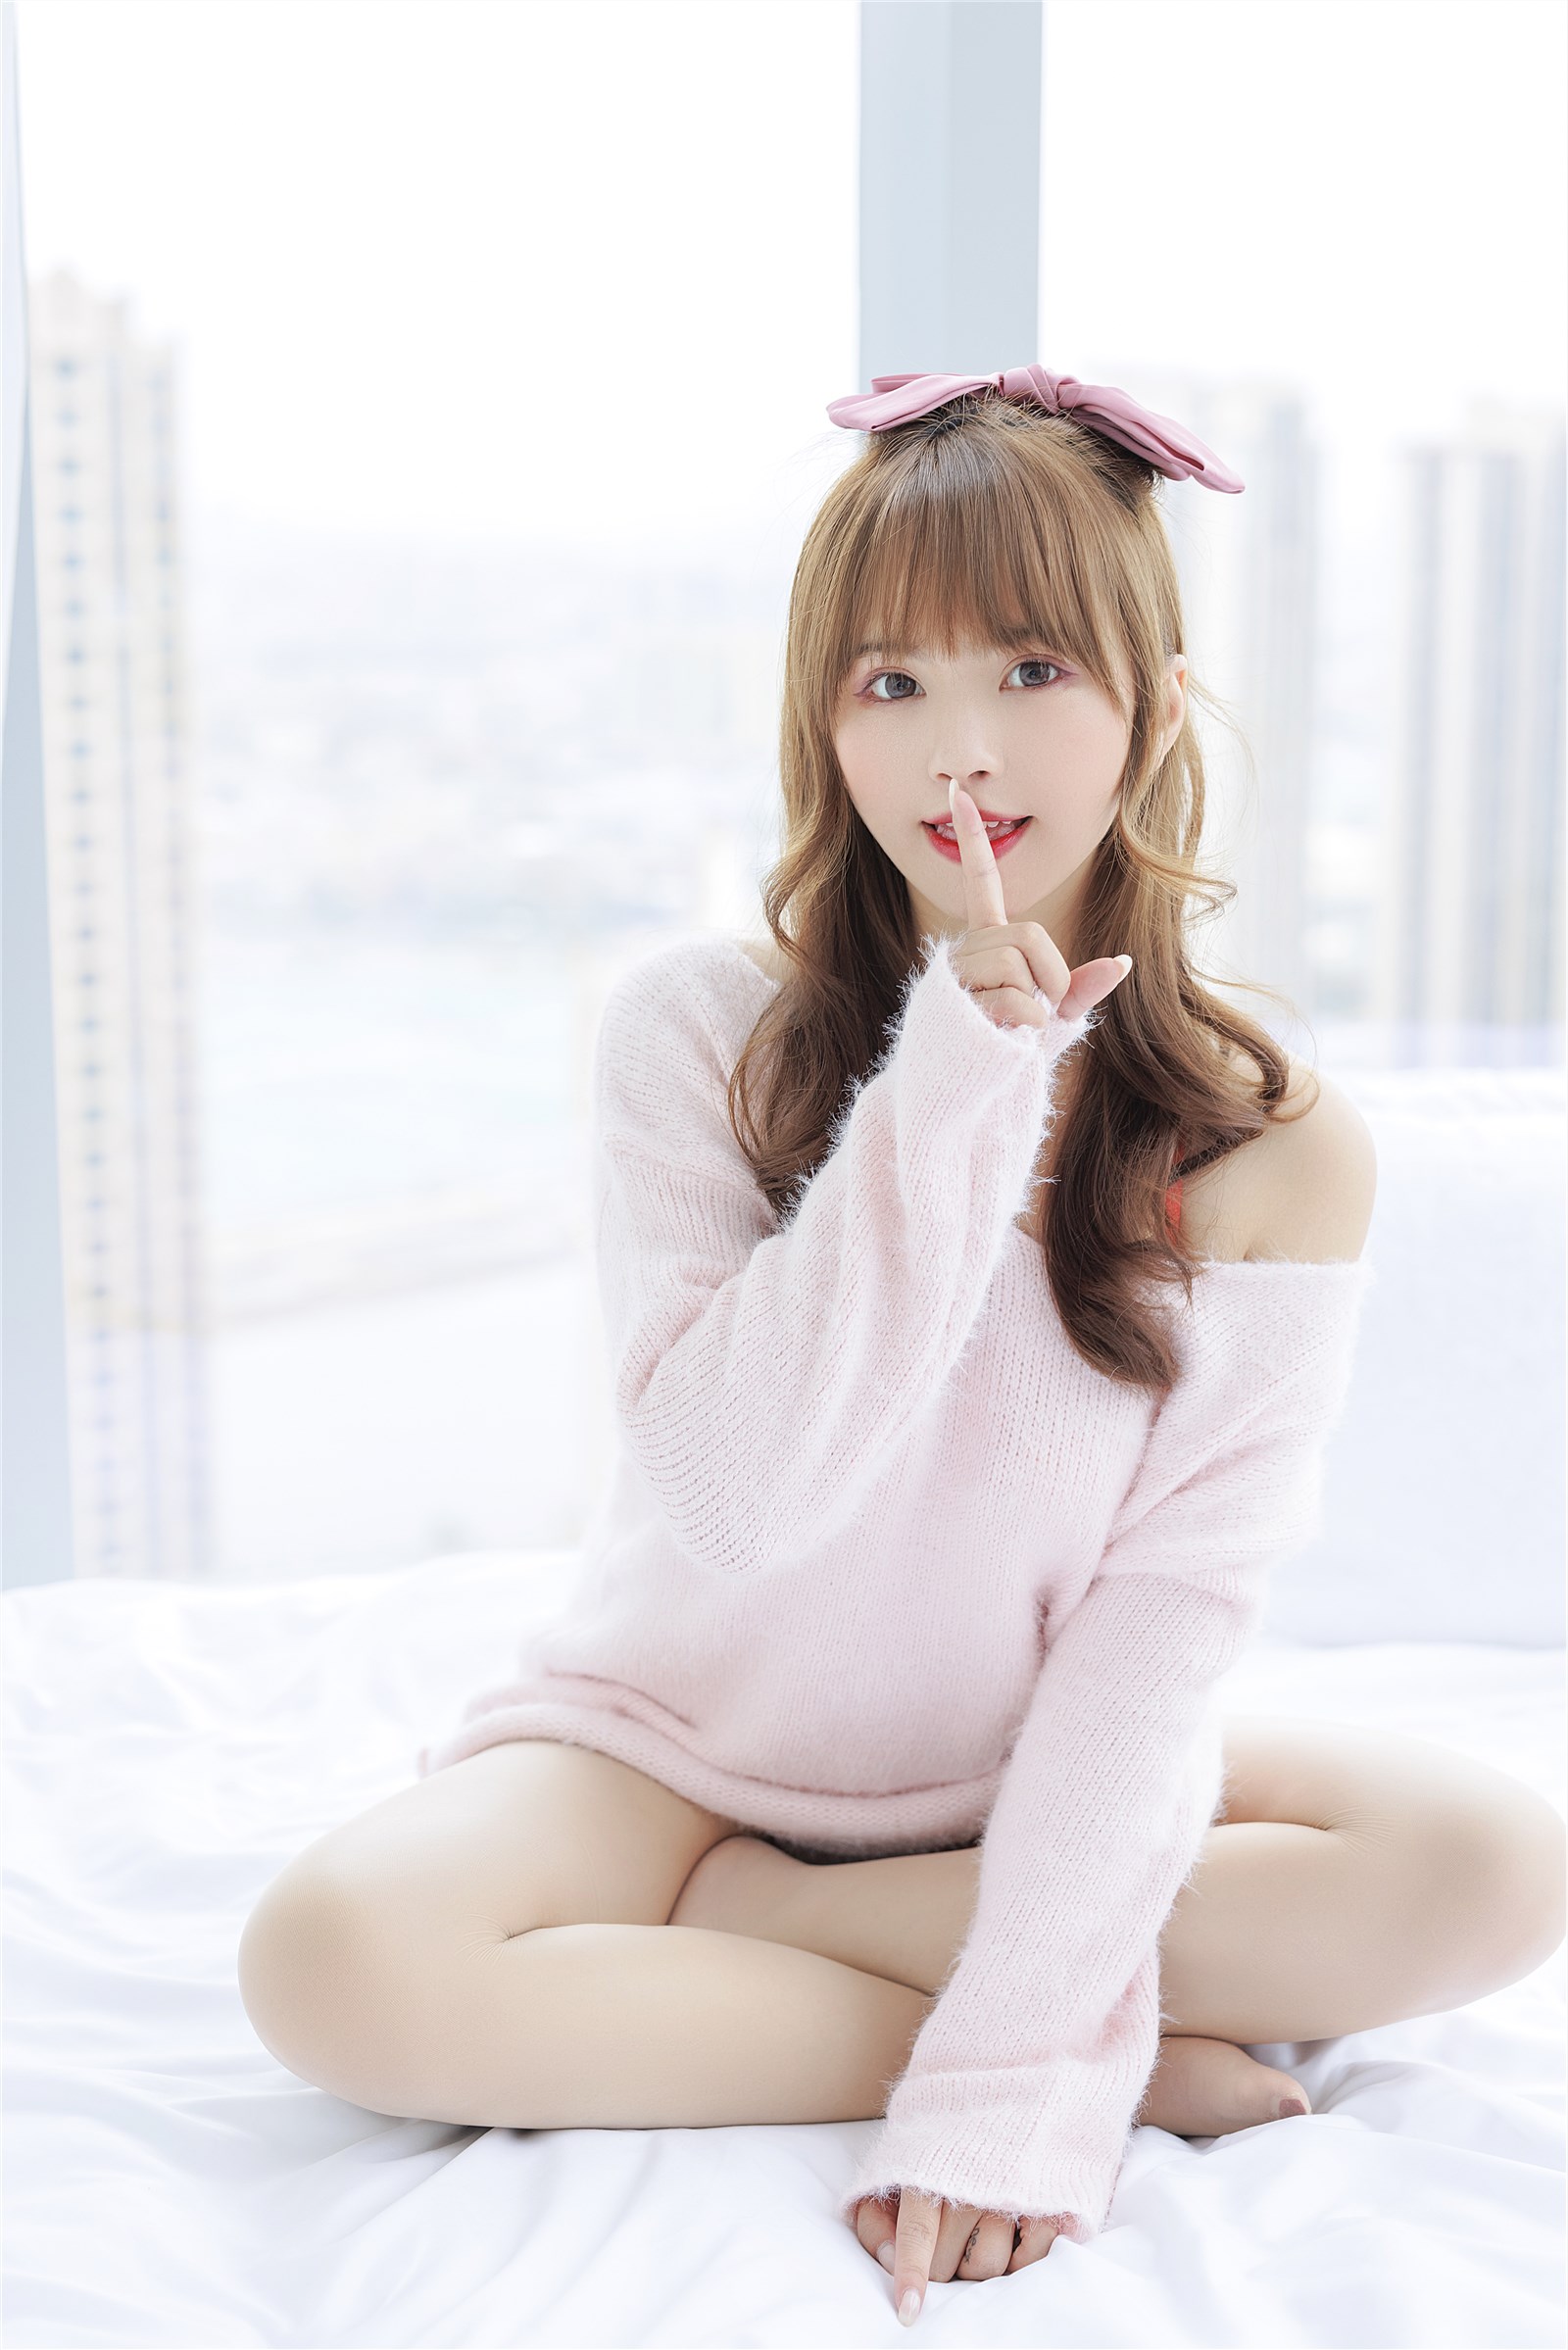 002. Zhang Siyun Nice - Internal purchase of watermark free pink sweater(3)